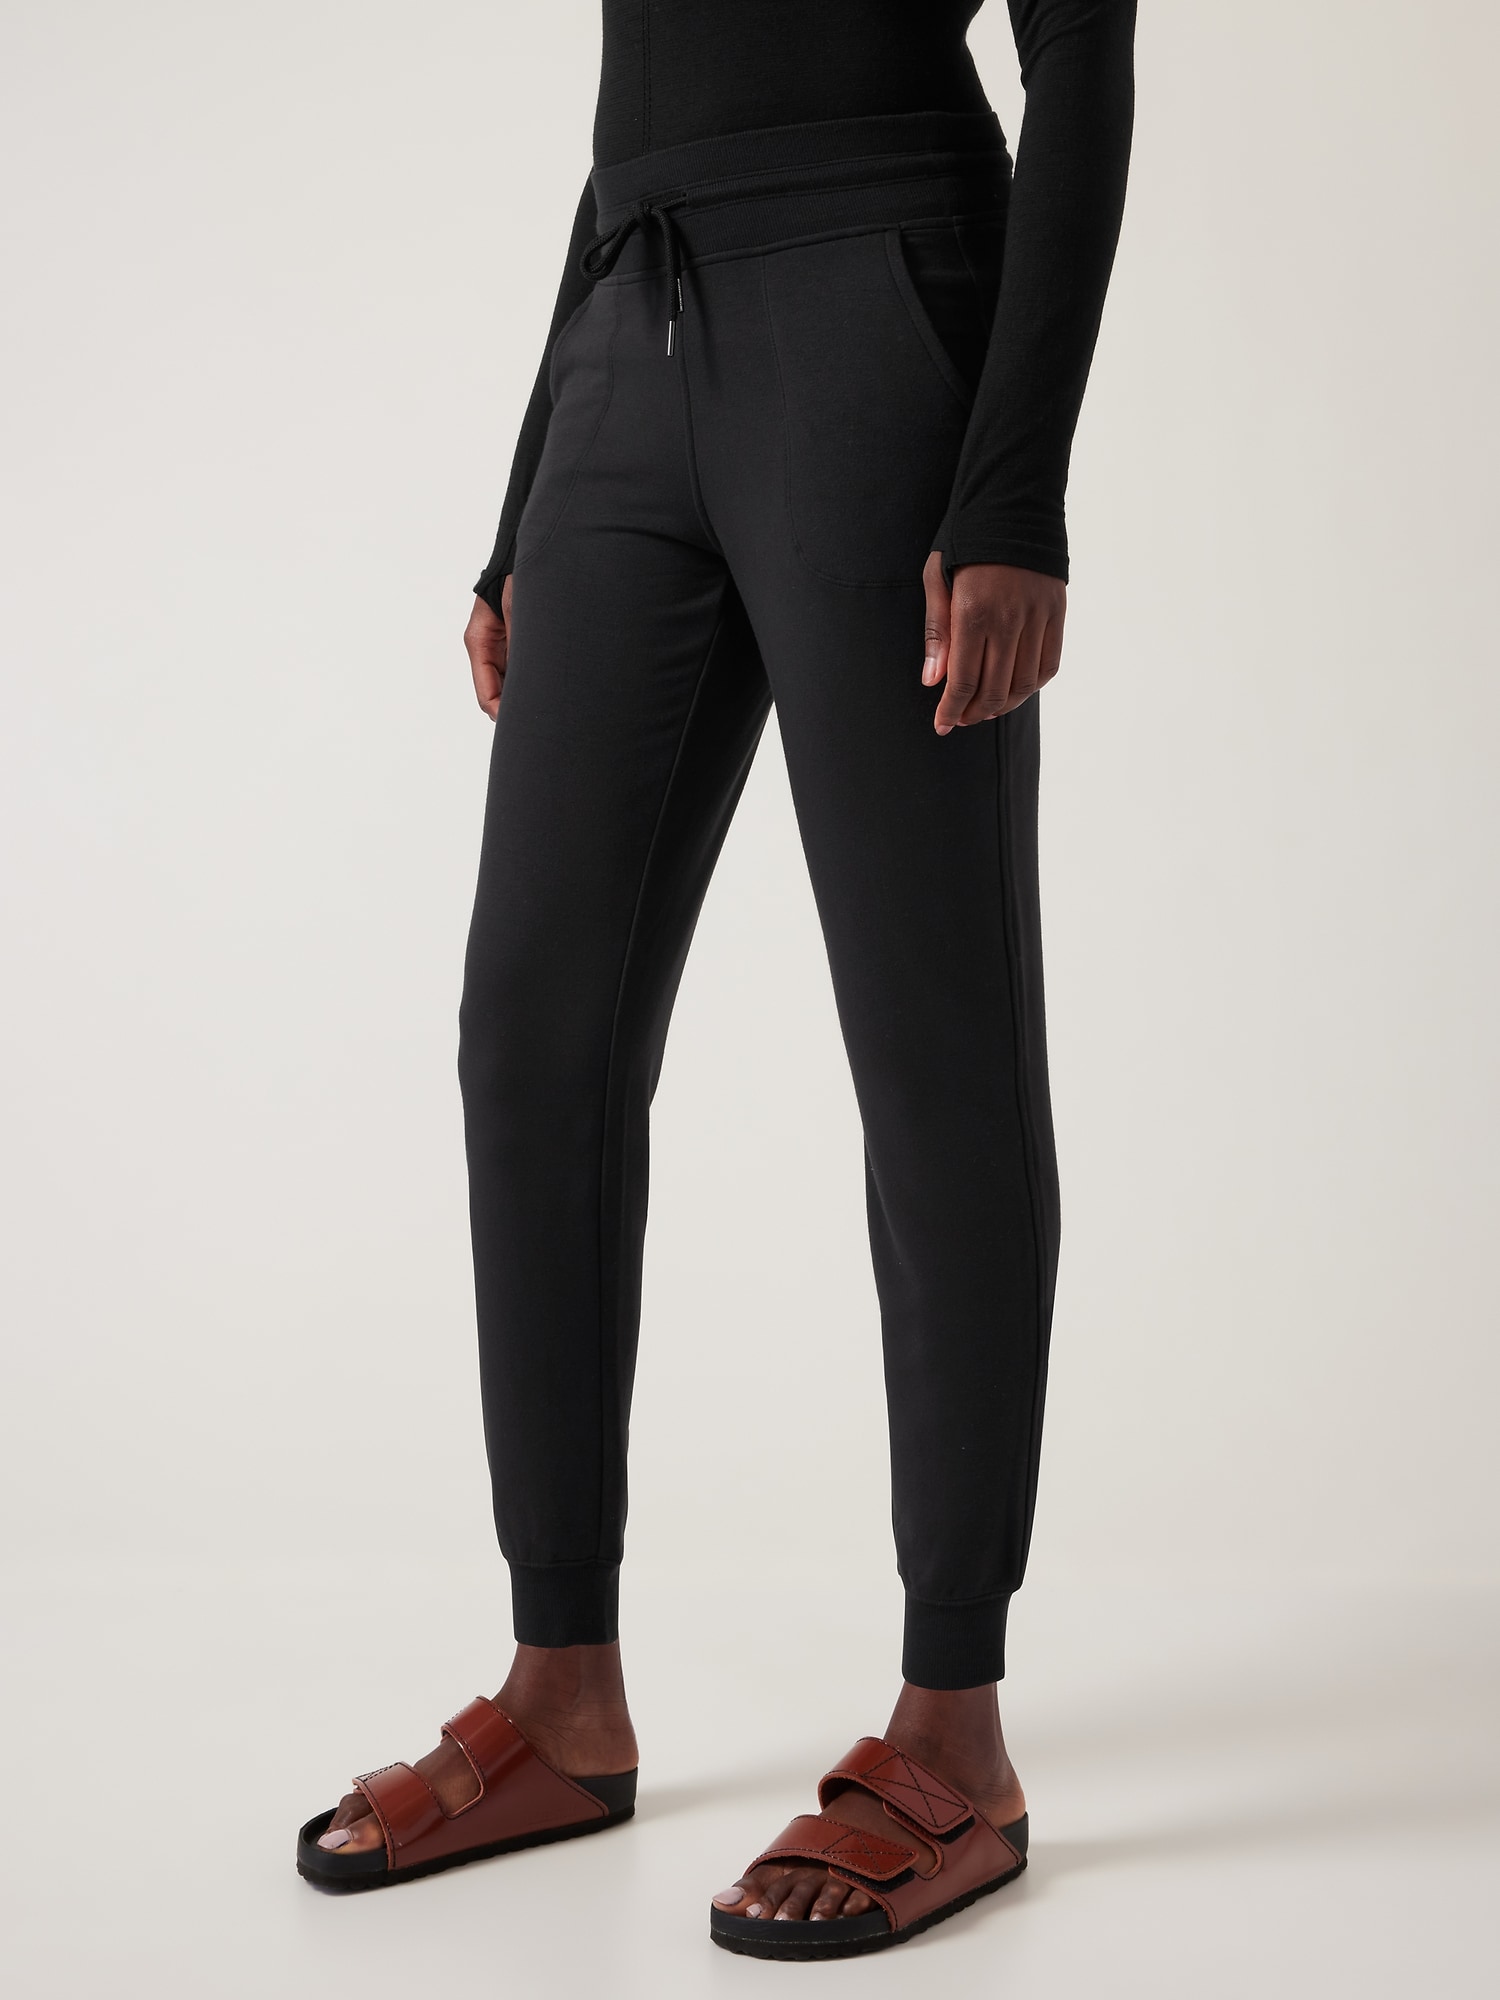 Athleta La Viva Black Drawstring Jogger Pants #964562, Size 10